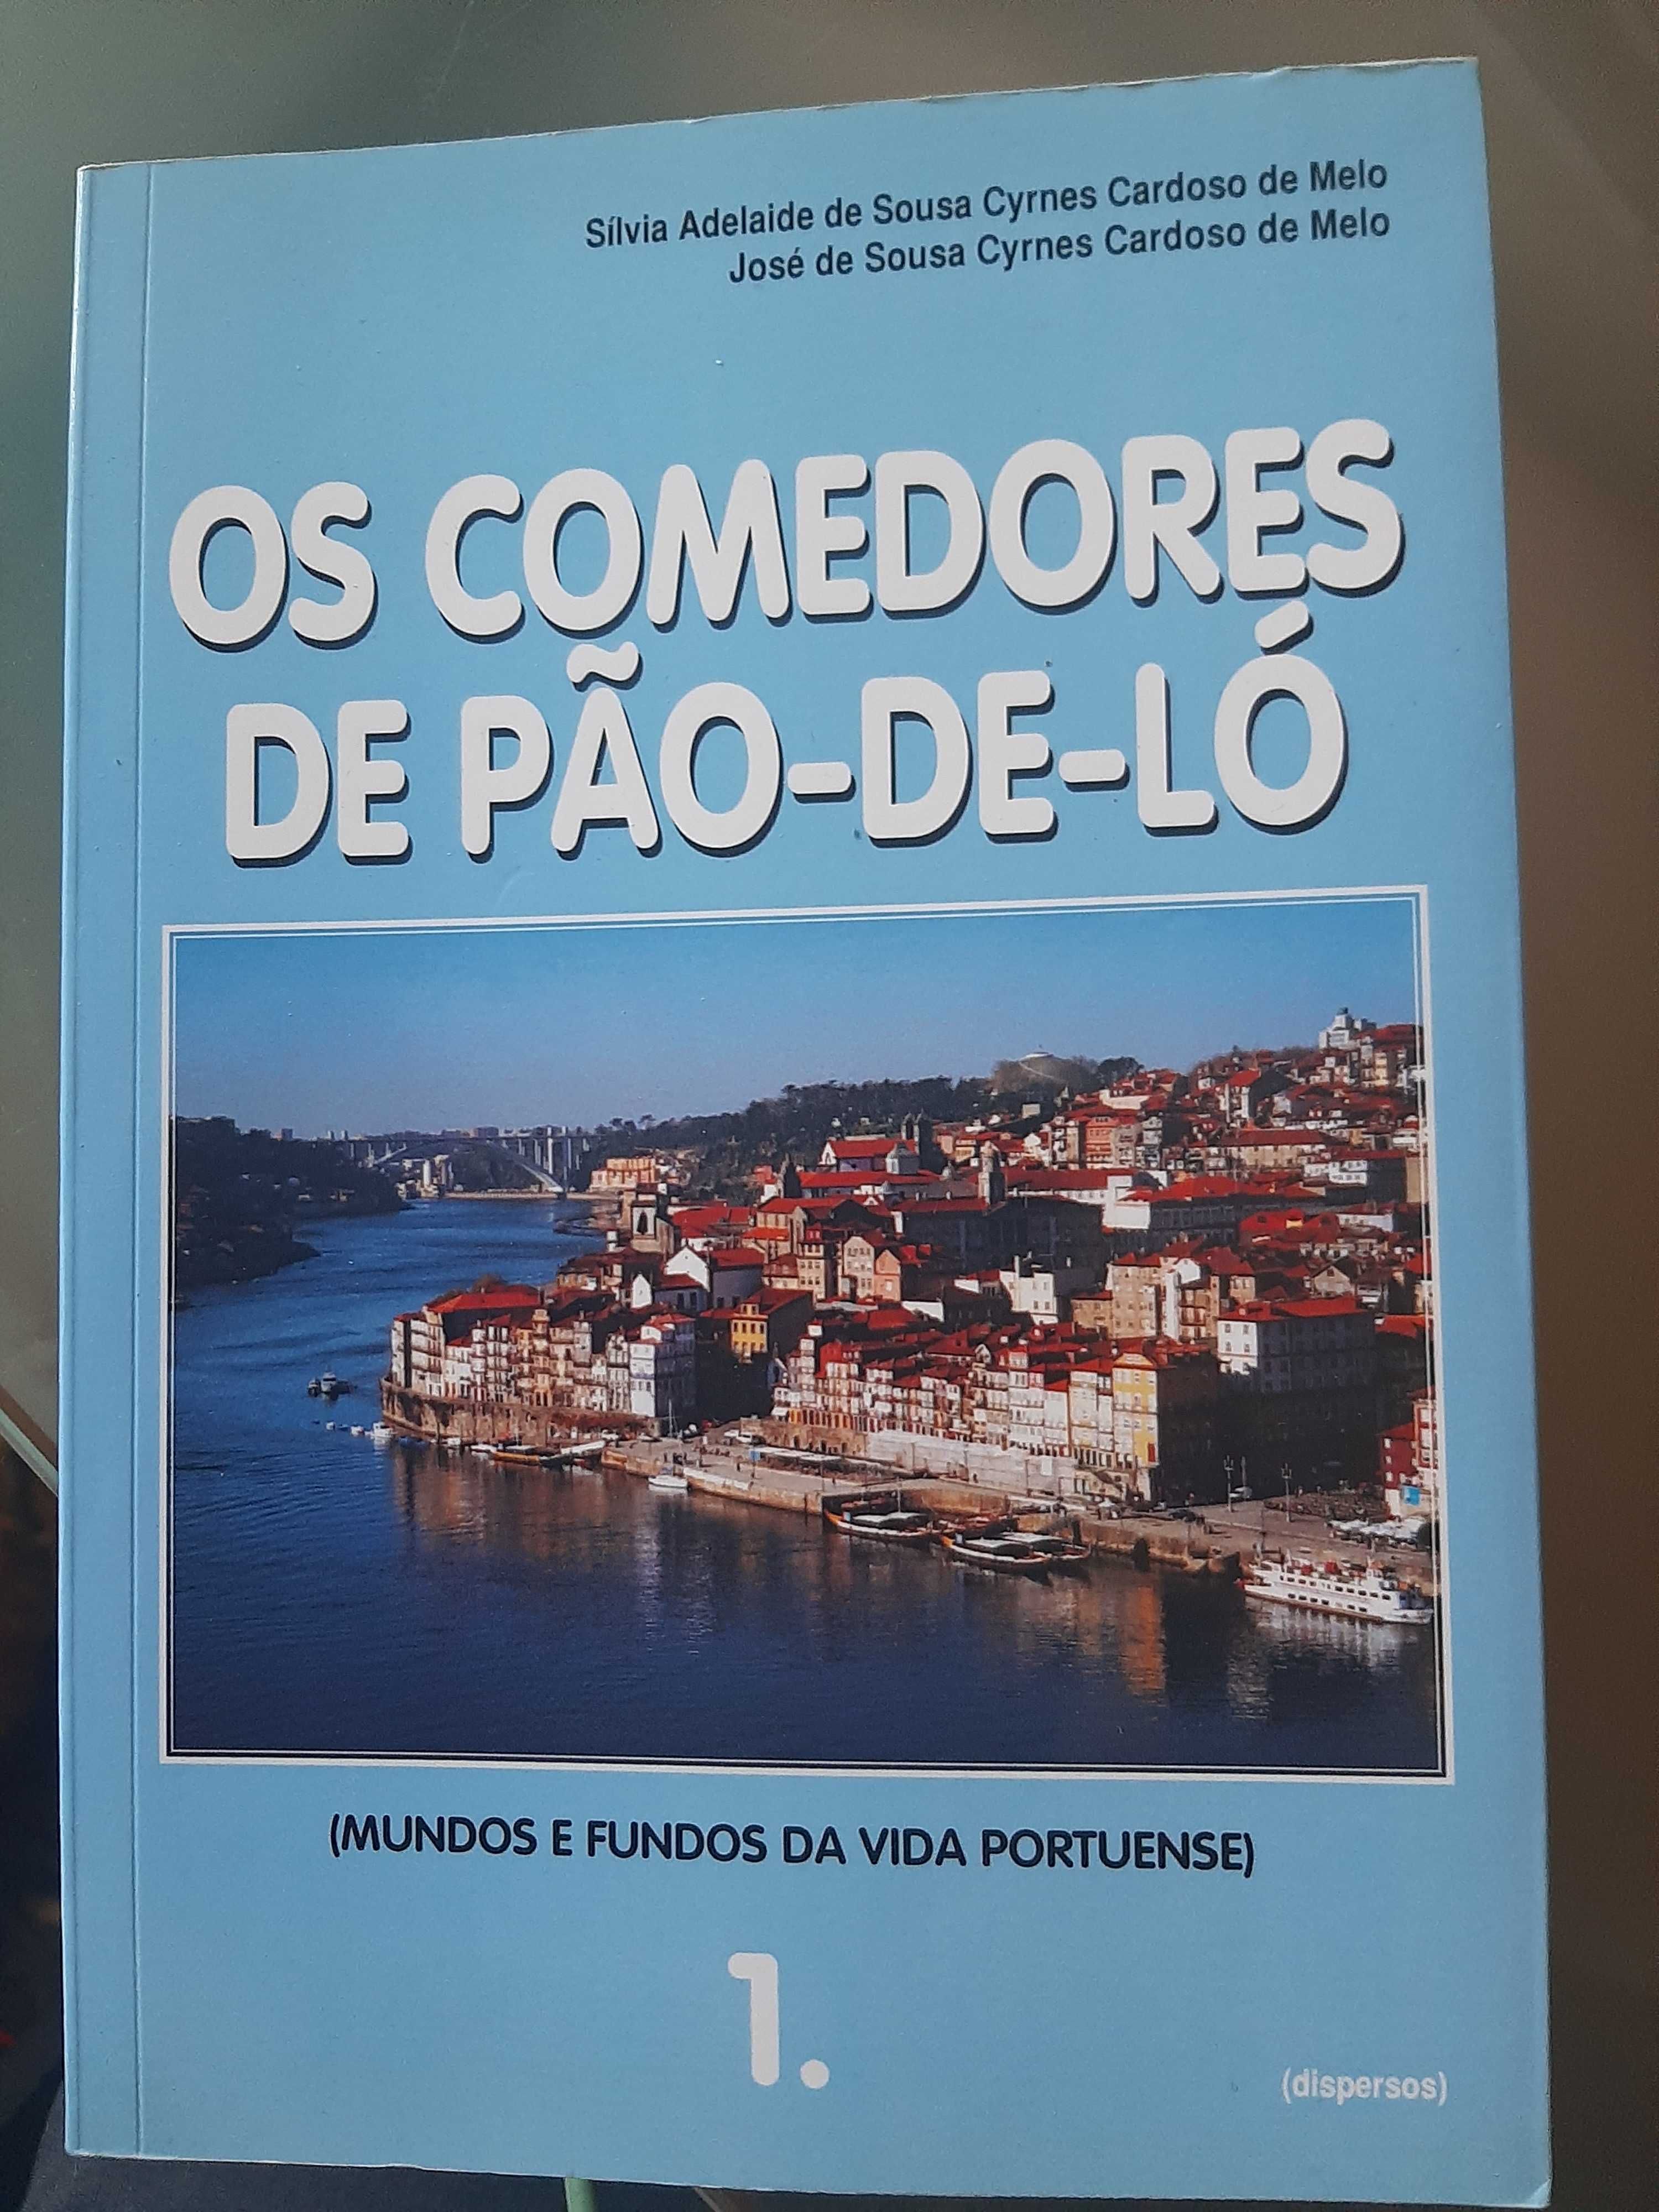 Os Comedores de Pão-de-ló 1 - Monografia do Porto - Guido Monterey